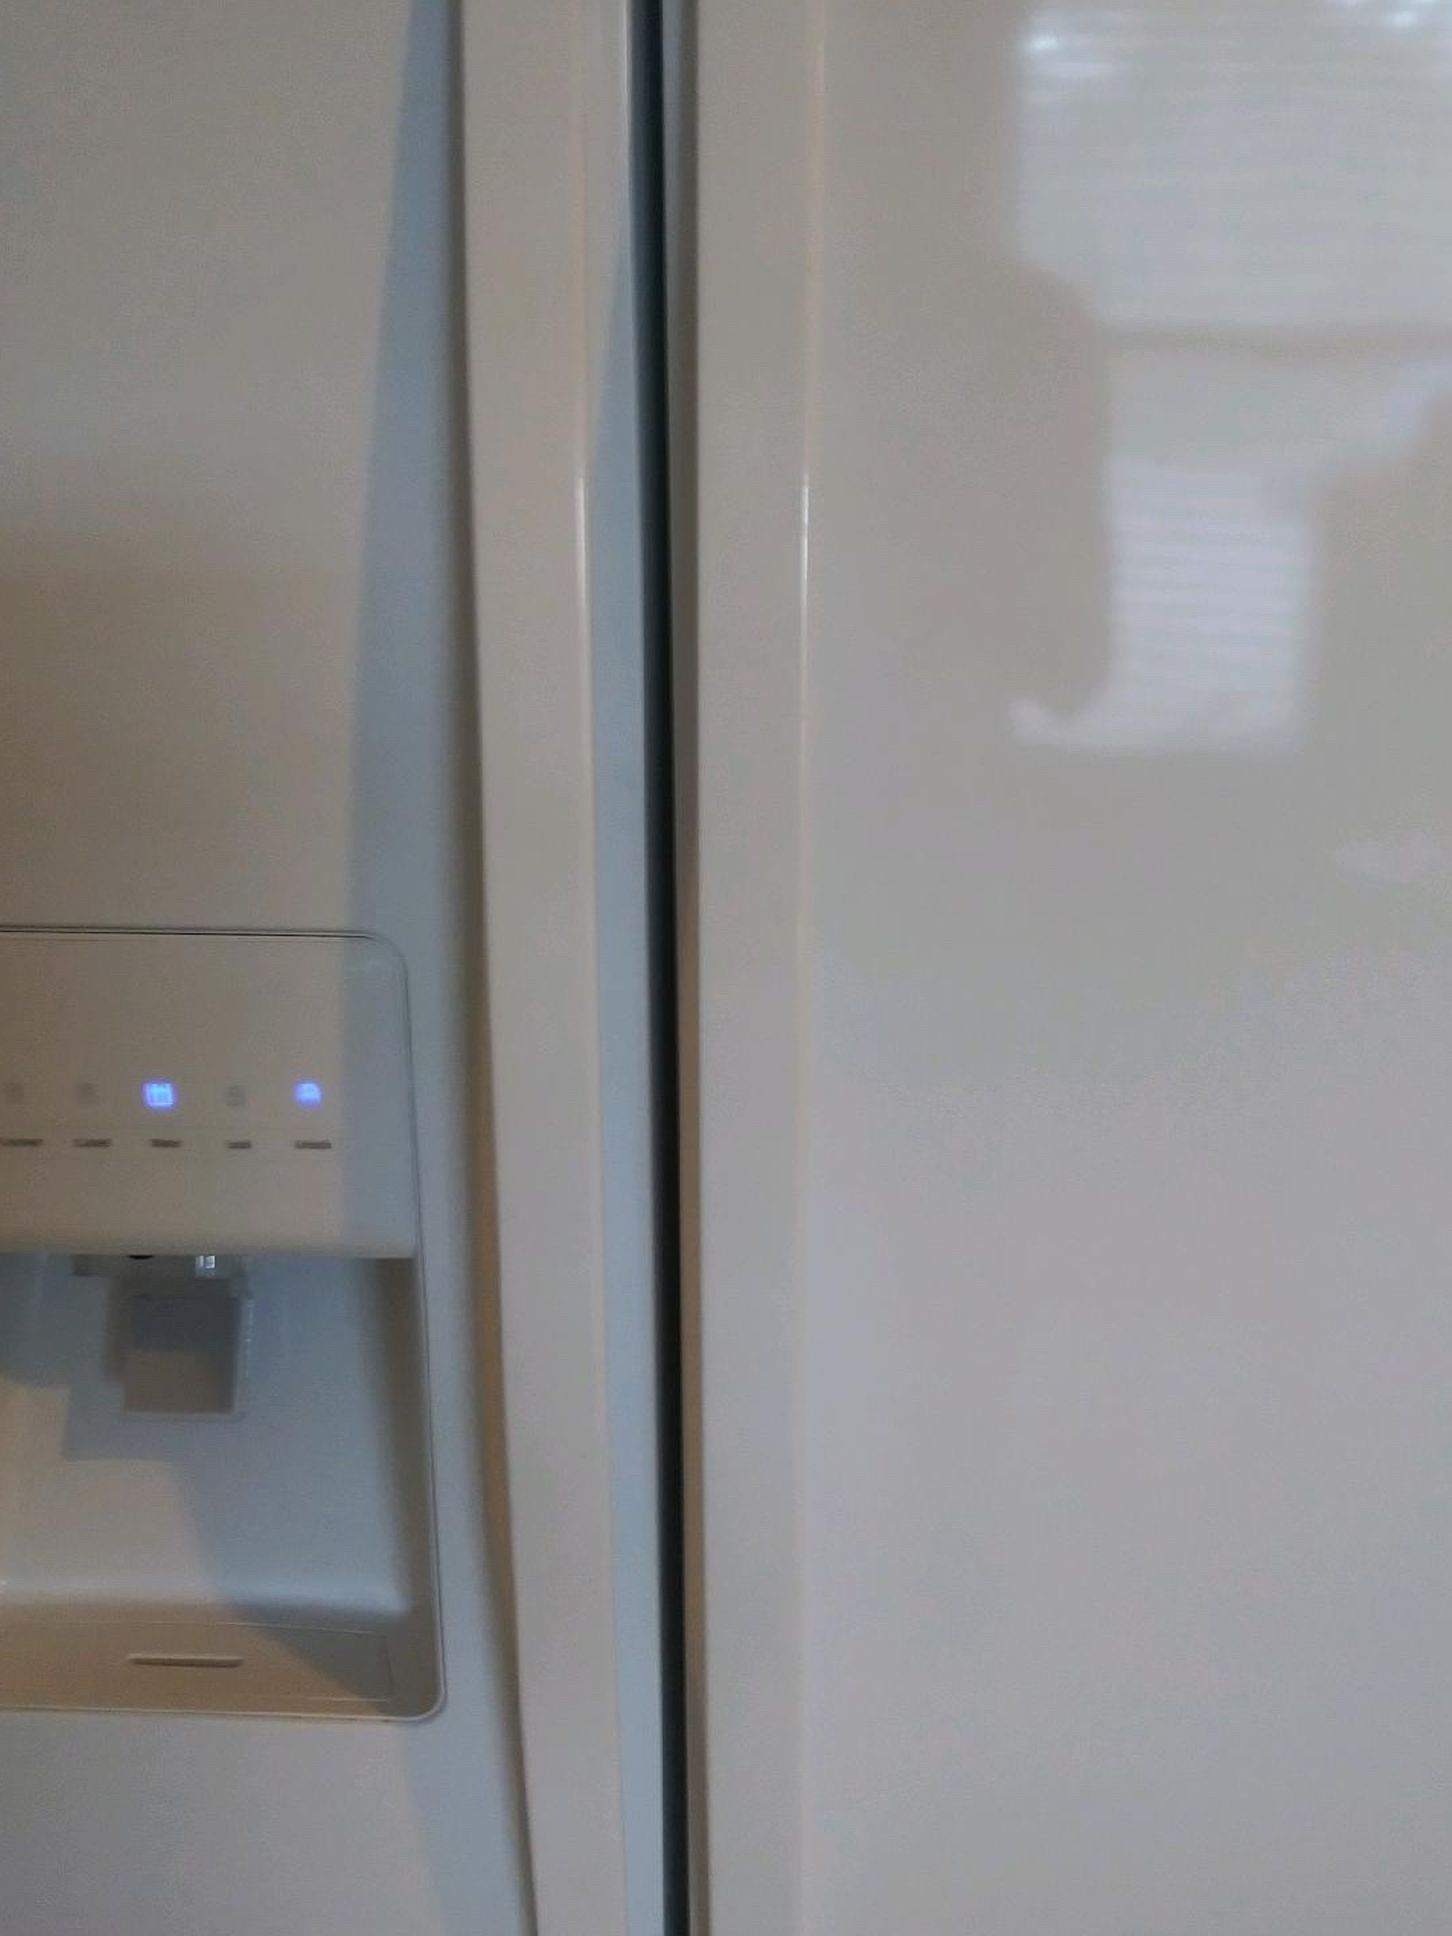 Refrigerator Whirlpool Good Condition